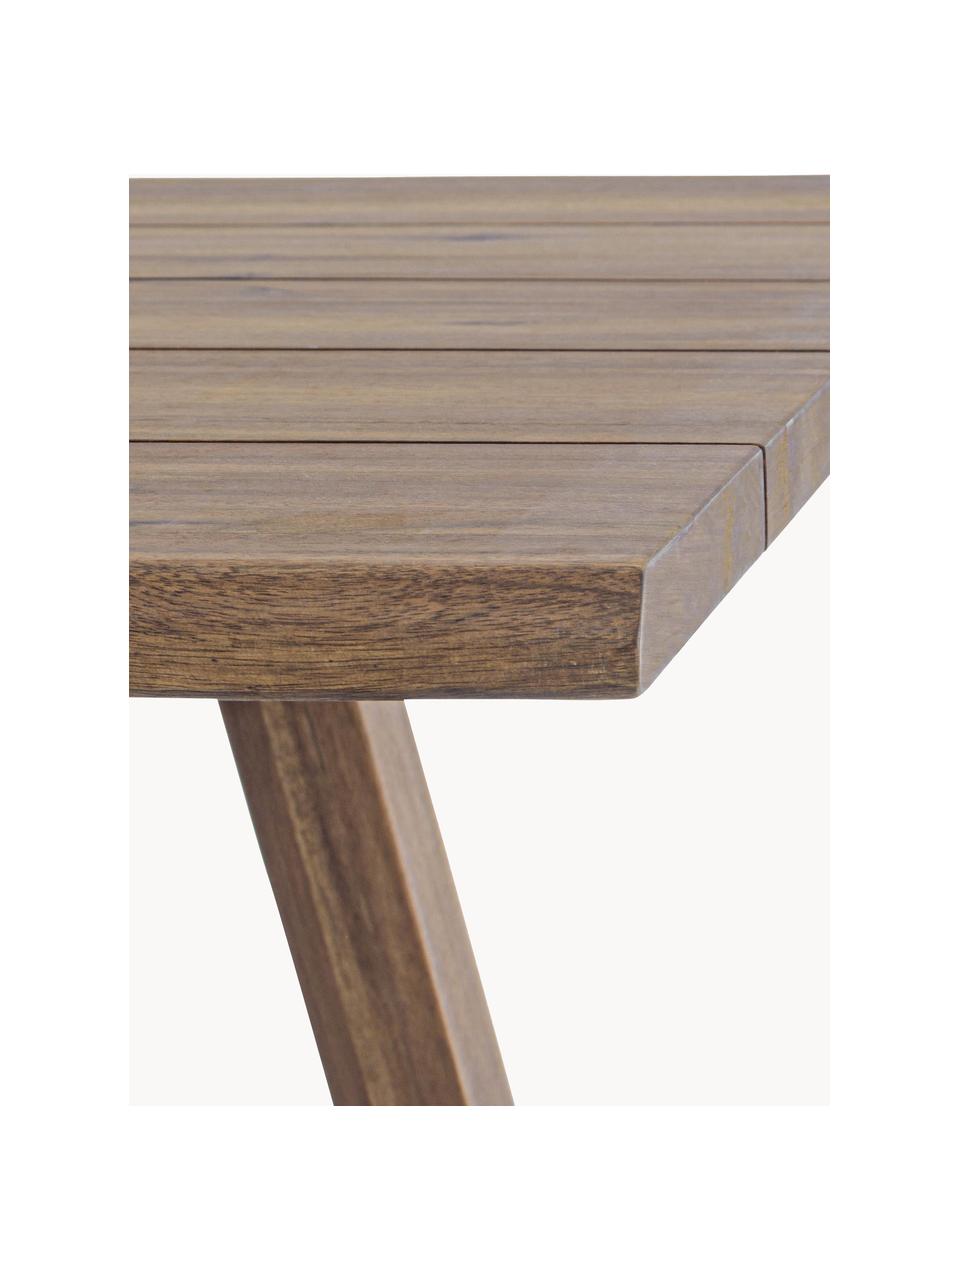 Záhradný stôl Glasgow, 180 x 90 cm, Akáciové drevo

Tento produkt je vyrobený z trvalo udržateľného dreva s certifikátom FSC®., Akáciové drevo, Š 180 x H 90 cm